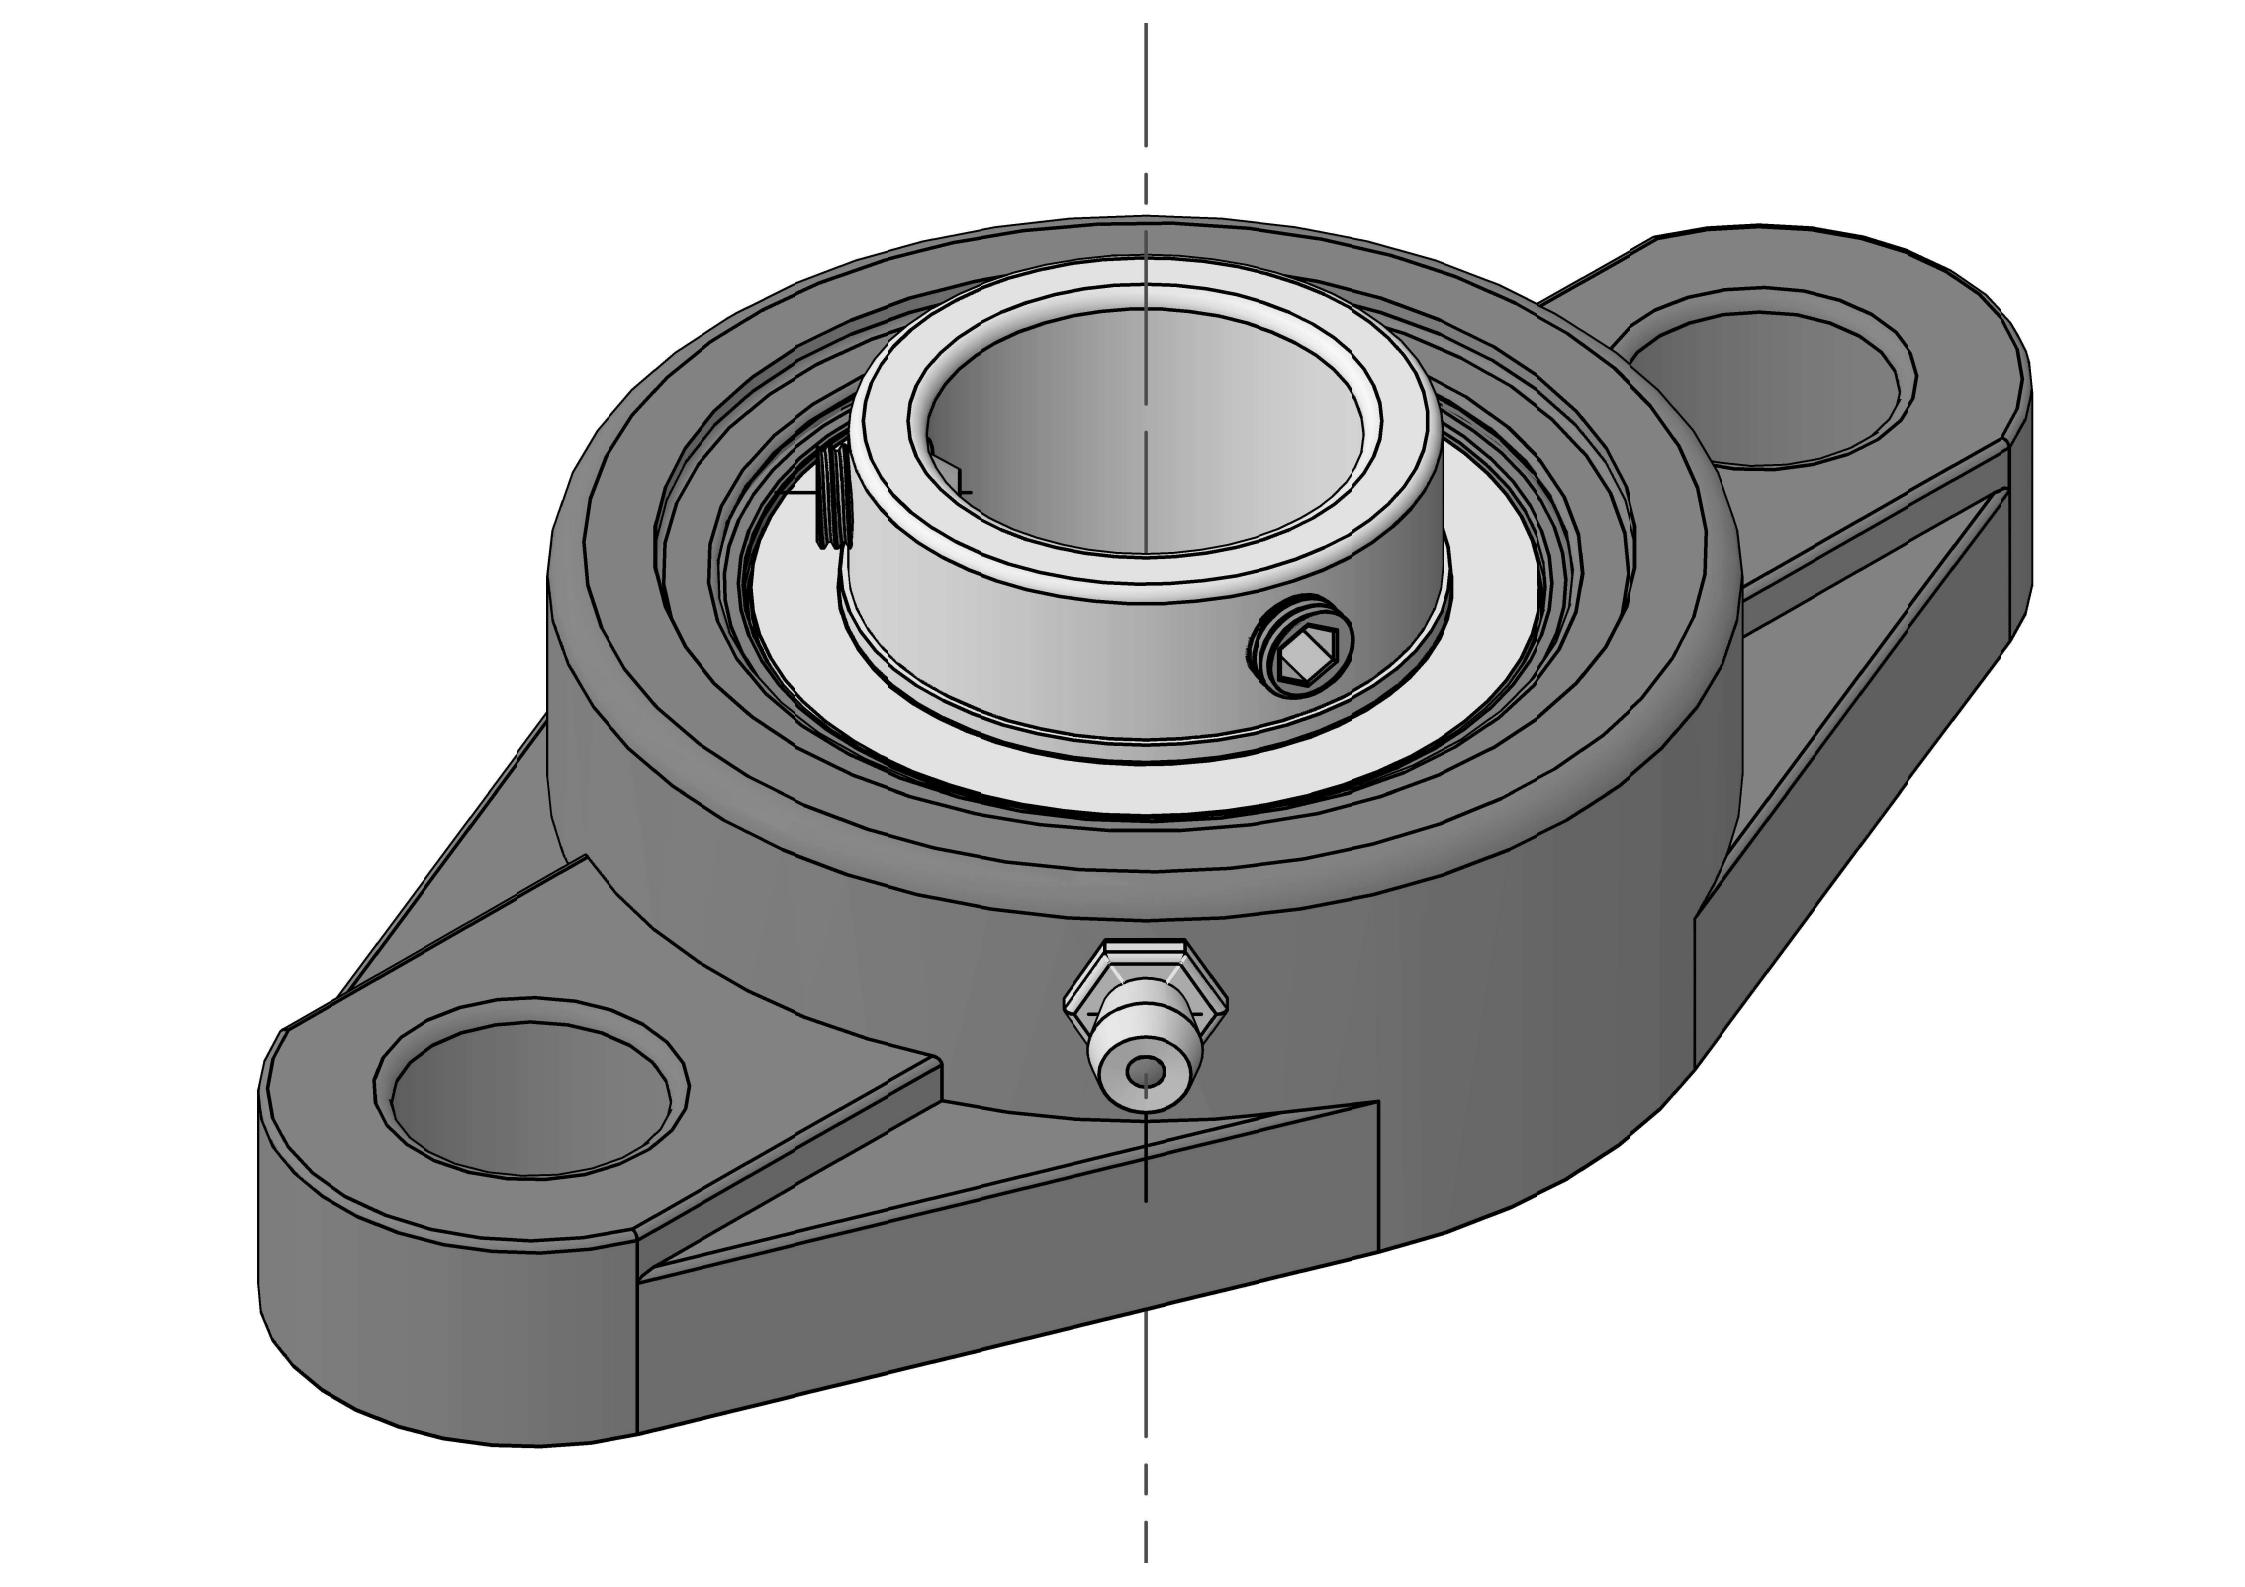 UCFLX07-20 2 ボルト楕円形フランジ ベアリング ユニット、ボア 1-1/4 インチ